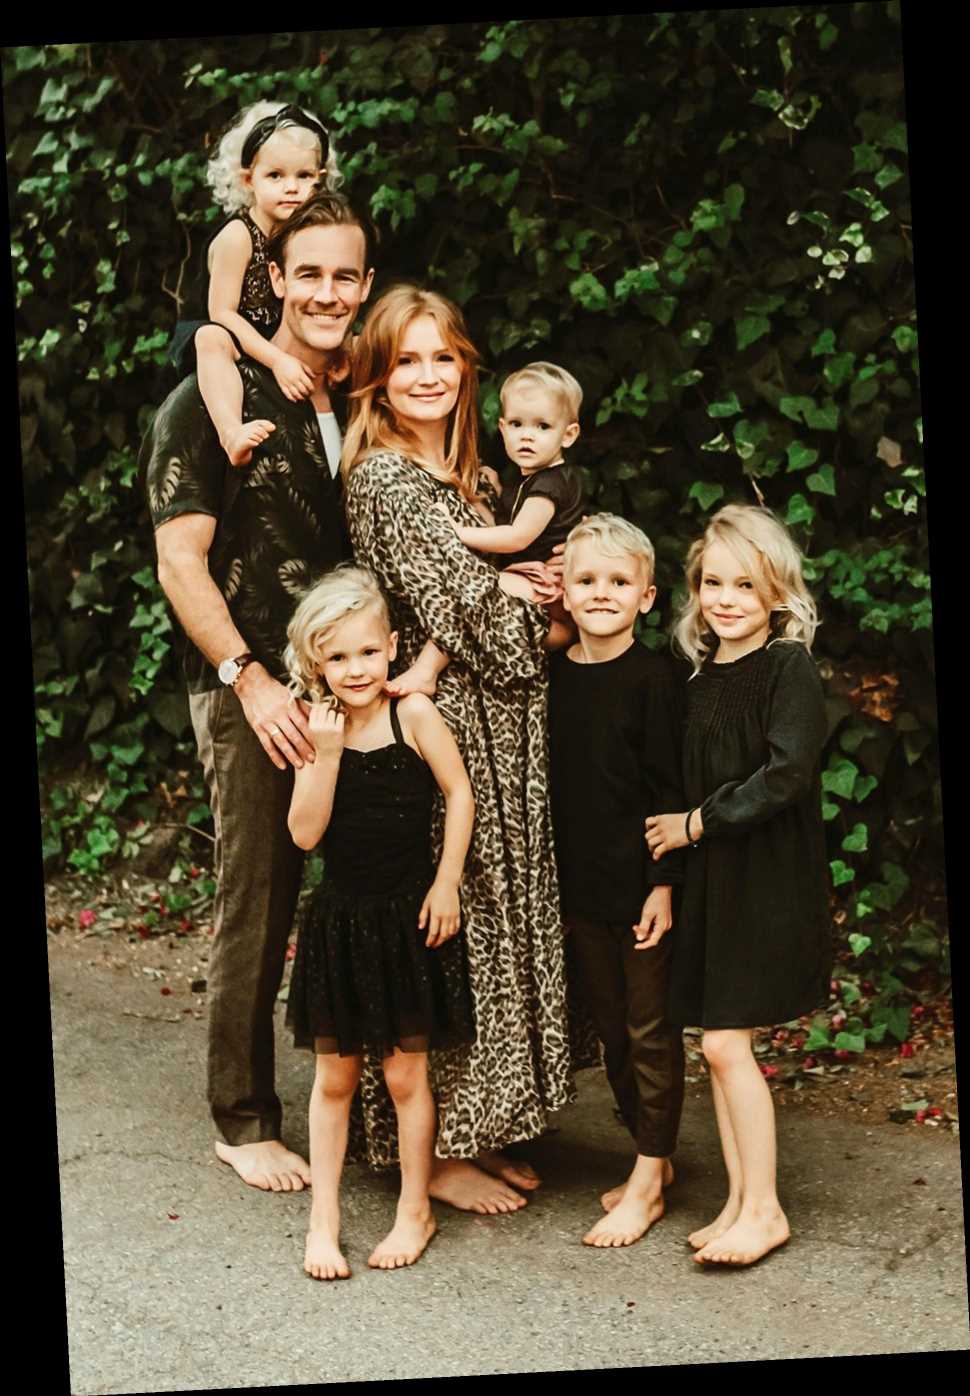 https://wstale.com/wp-content/uploads/2019/10/ccelebritiesjames-van-der-beek-family-portrait.jpg